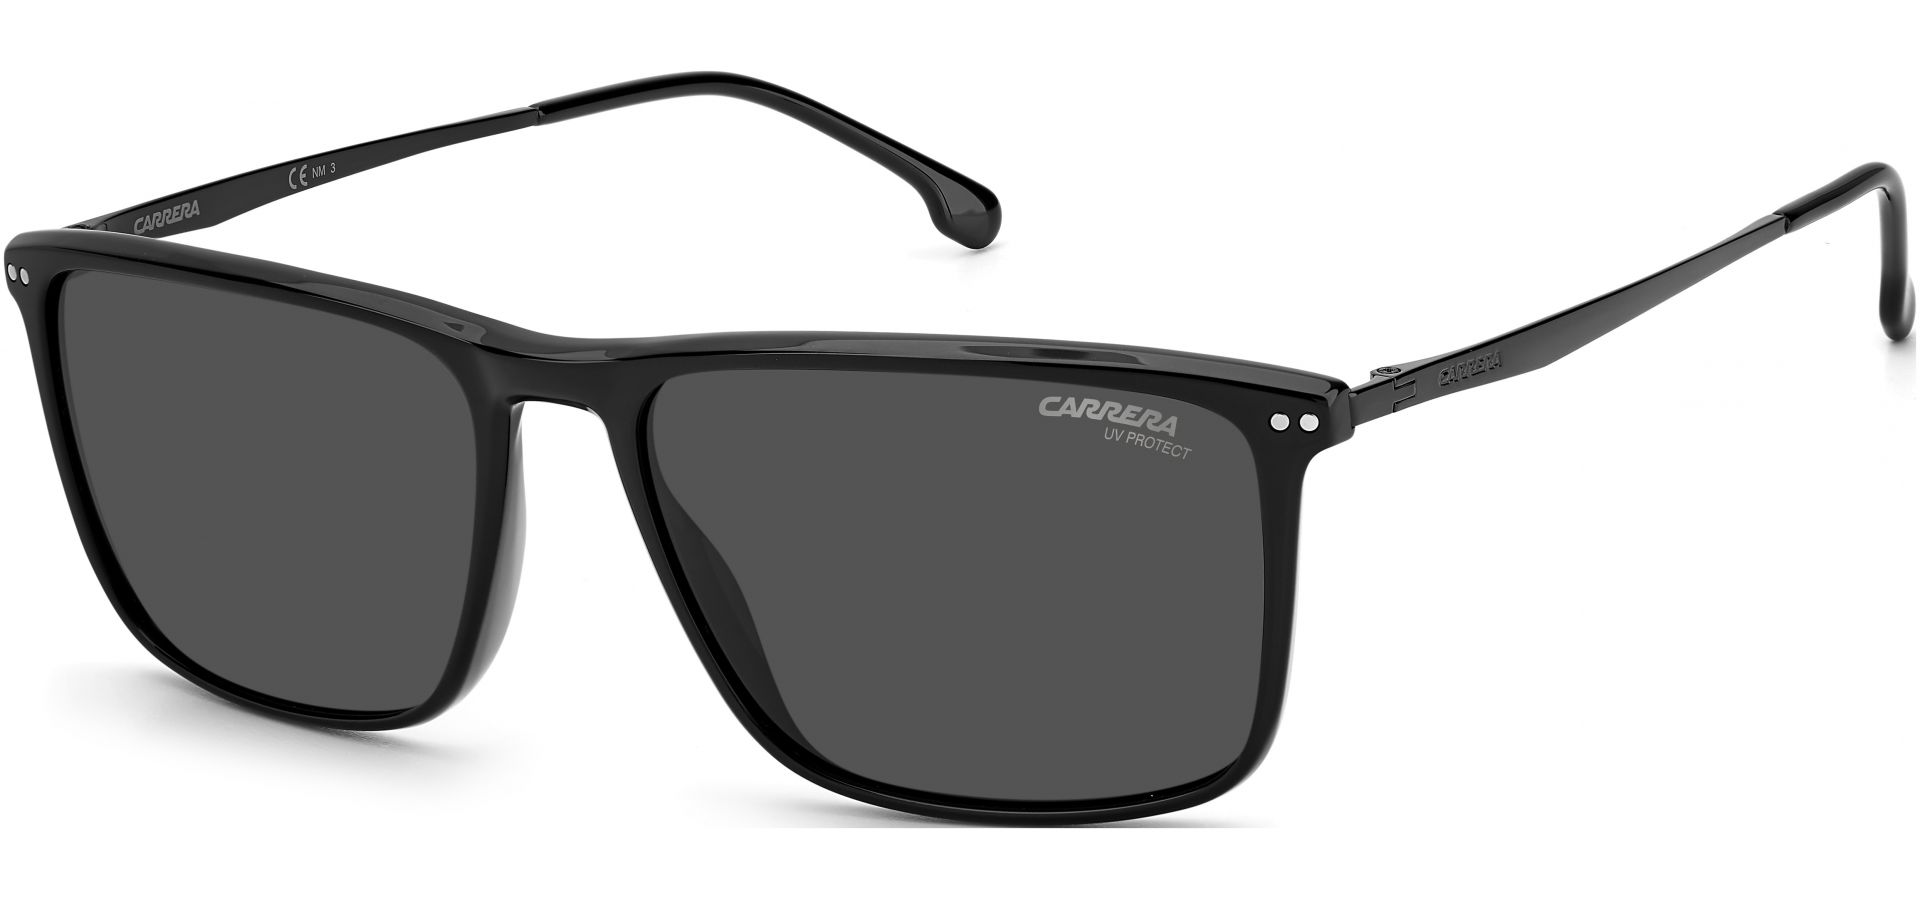 Sunčane naočale Carrera CARRERA 8049/S 807 58IR: Boja: Black, Veličina: 58-16-145, Spol: muške, Materijal: acetat